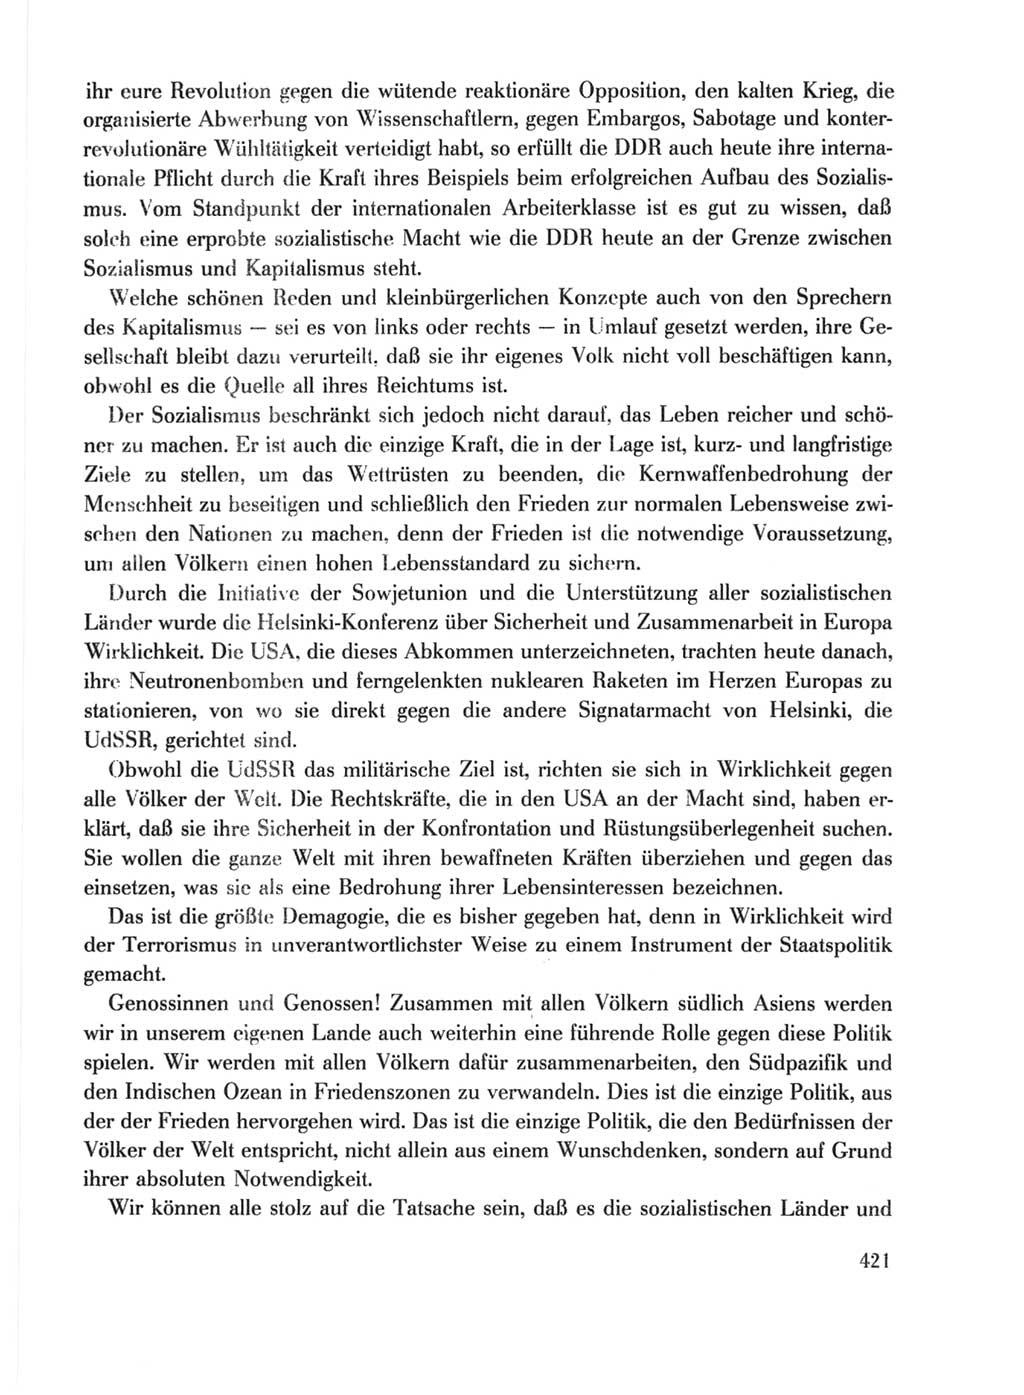 Protokoll der Verhandlungen des Ⅹ. Parteitages der Sozialistischen Einheitspartei Deutschlands (SED) [Deutsche Demokratische Republik (DDR)] 1981, Band 1, Seite 421 (Prot. Verh. Ⅹ. PT SED DDR 1981, Bd. 1, S. 421)